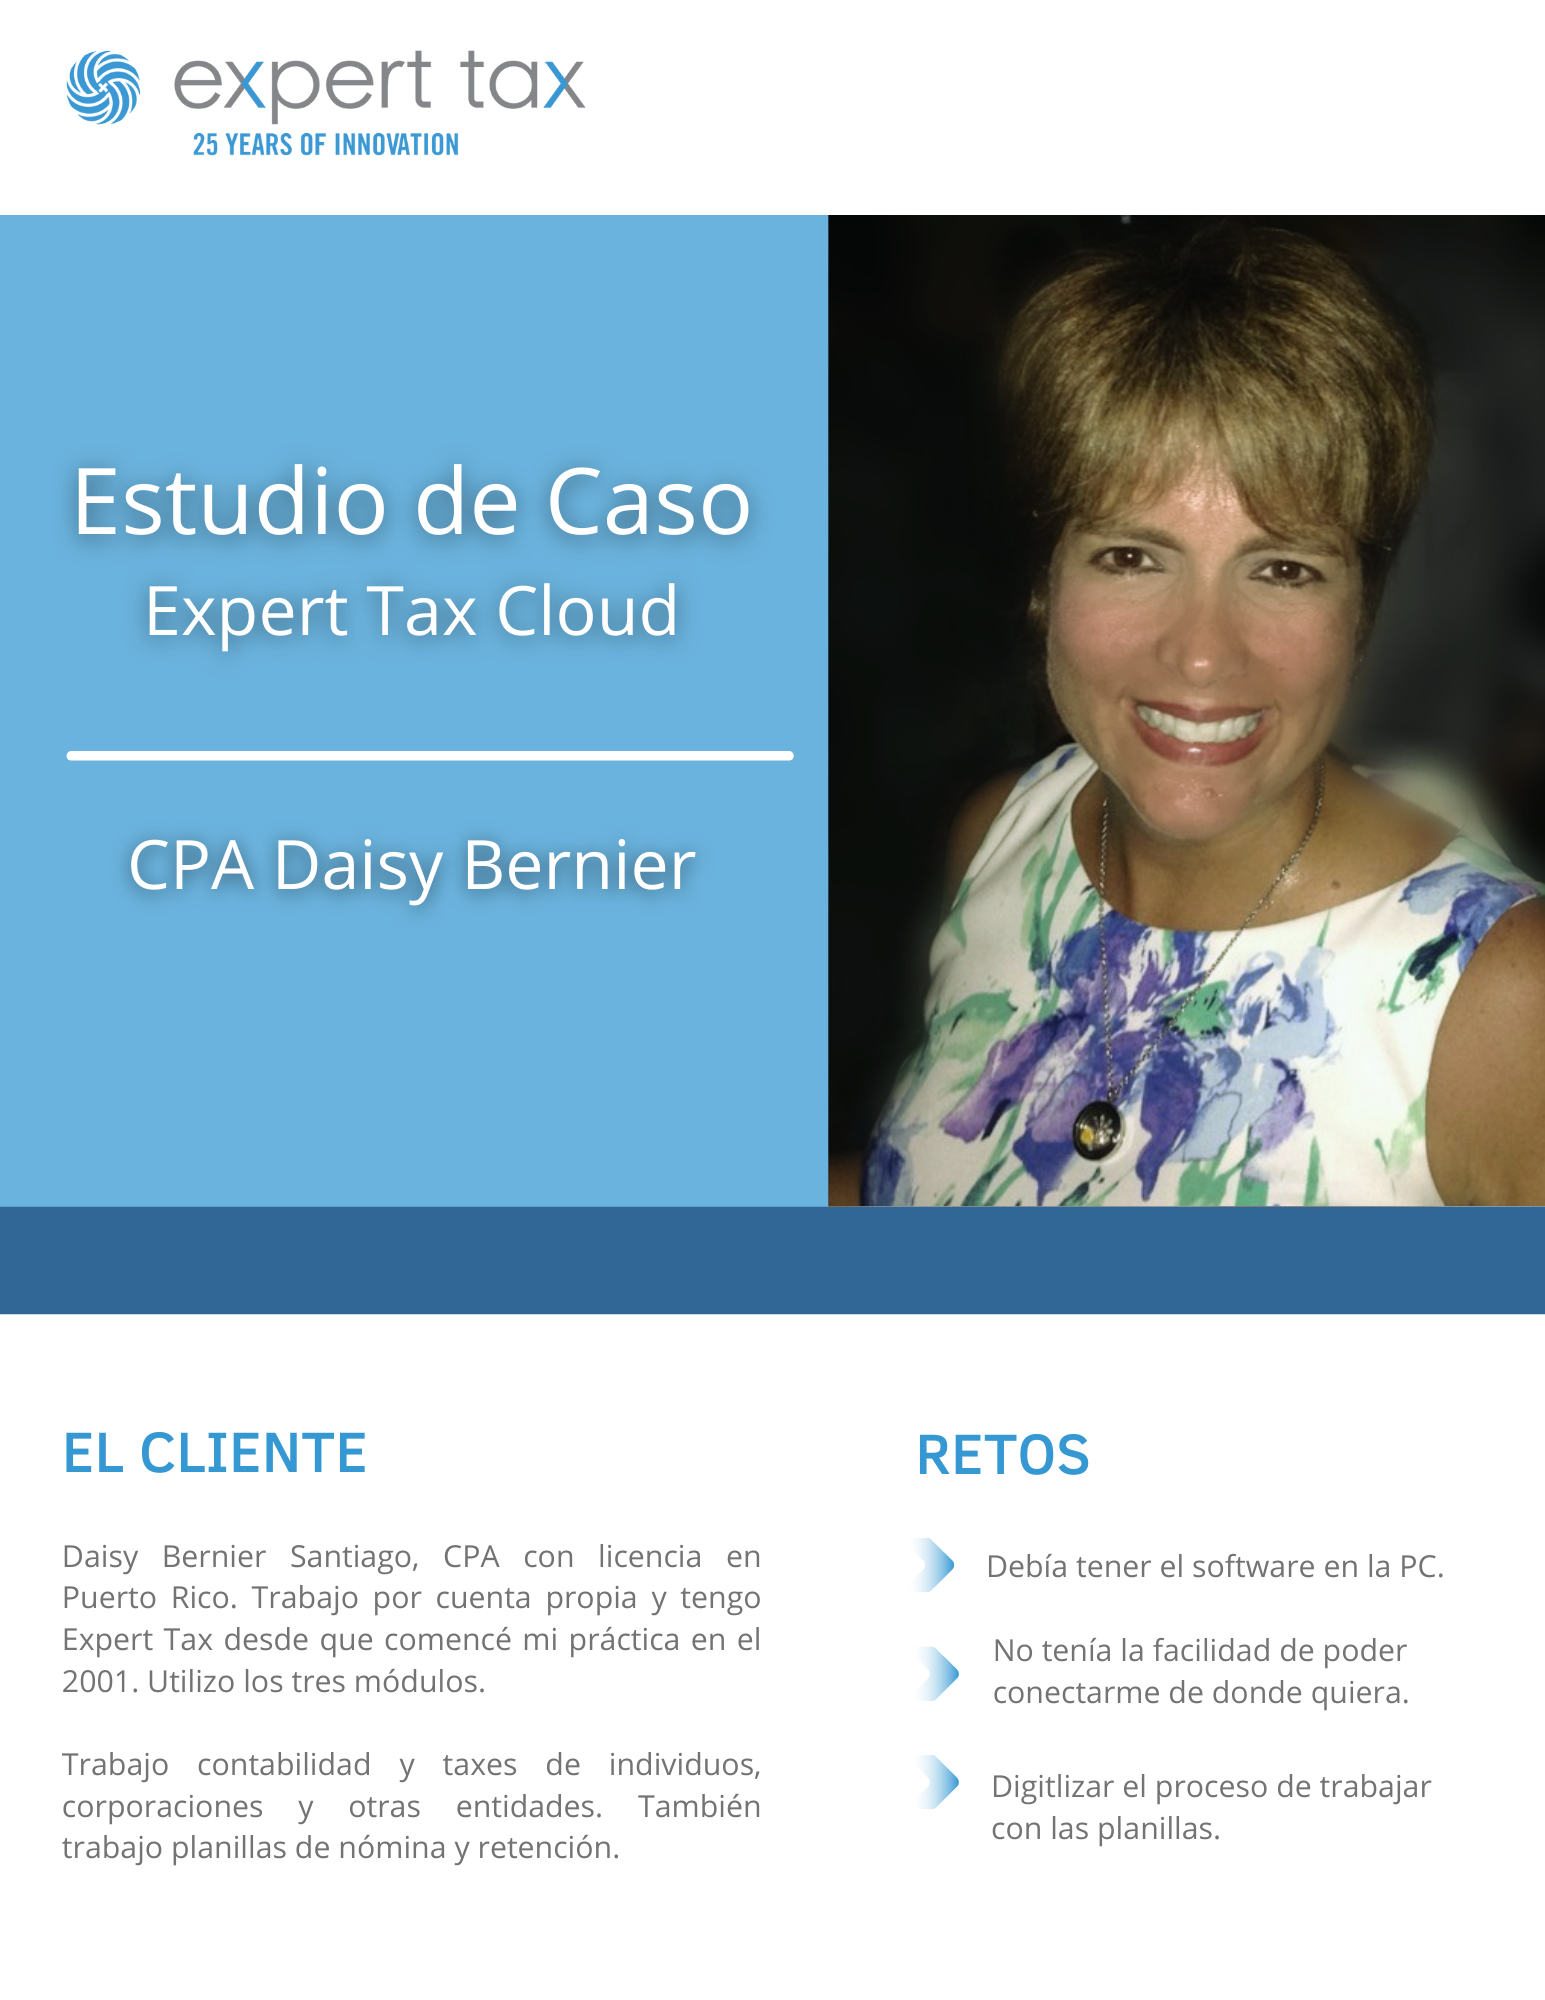 Estudio_de_Caso_Daisy_Bernier-Expert_Tax__2_.png